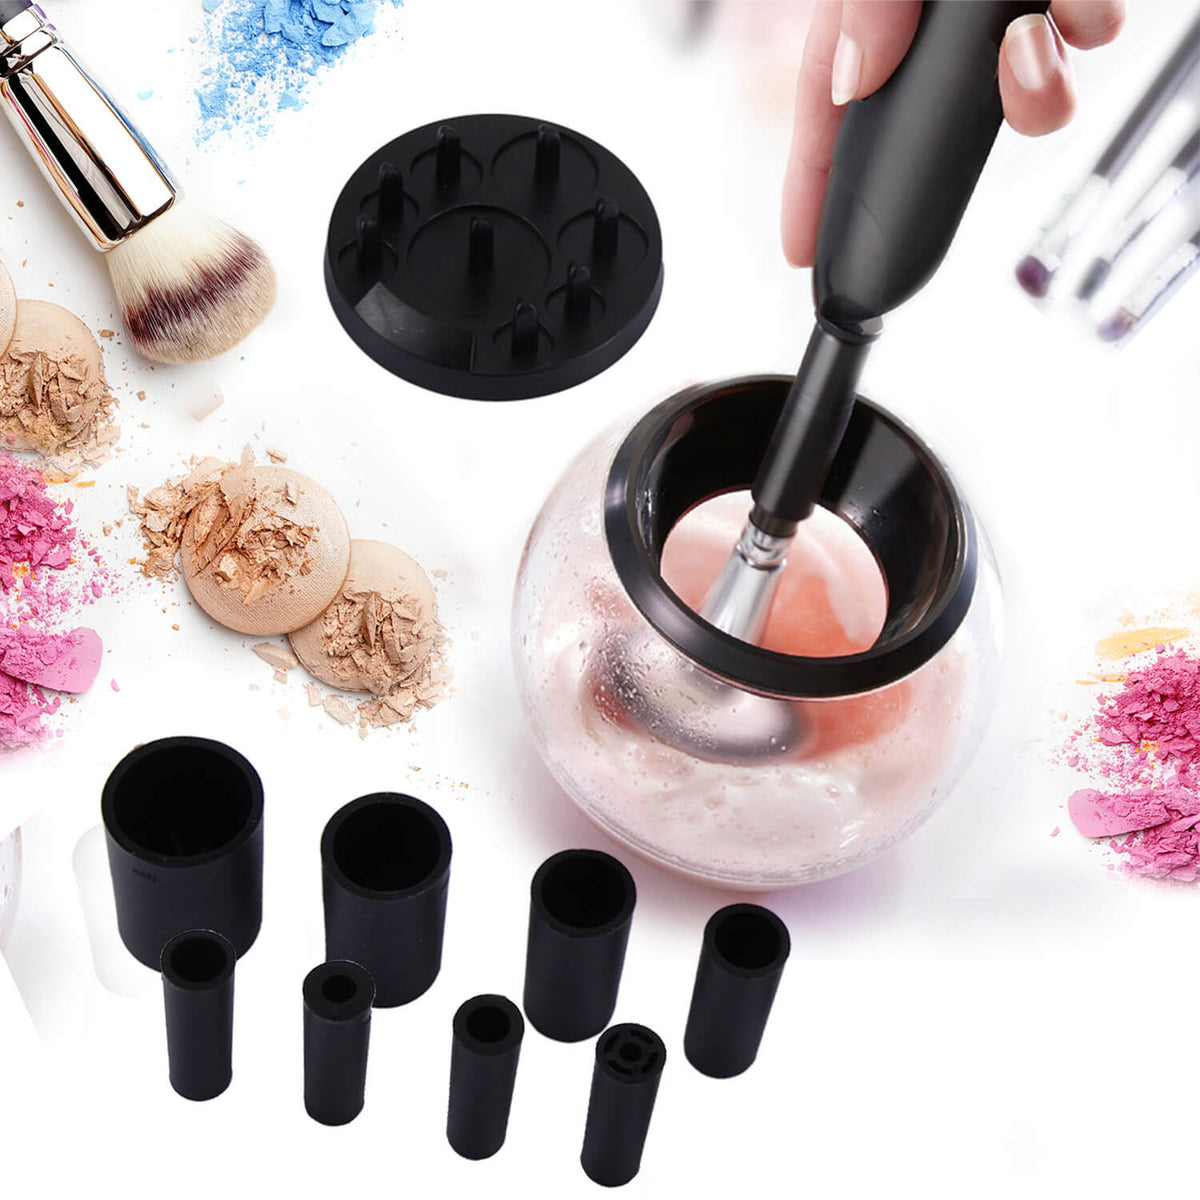 Datering Electric Makeup Brush Cleaner Machine – TweezerCo